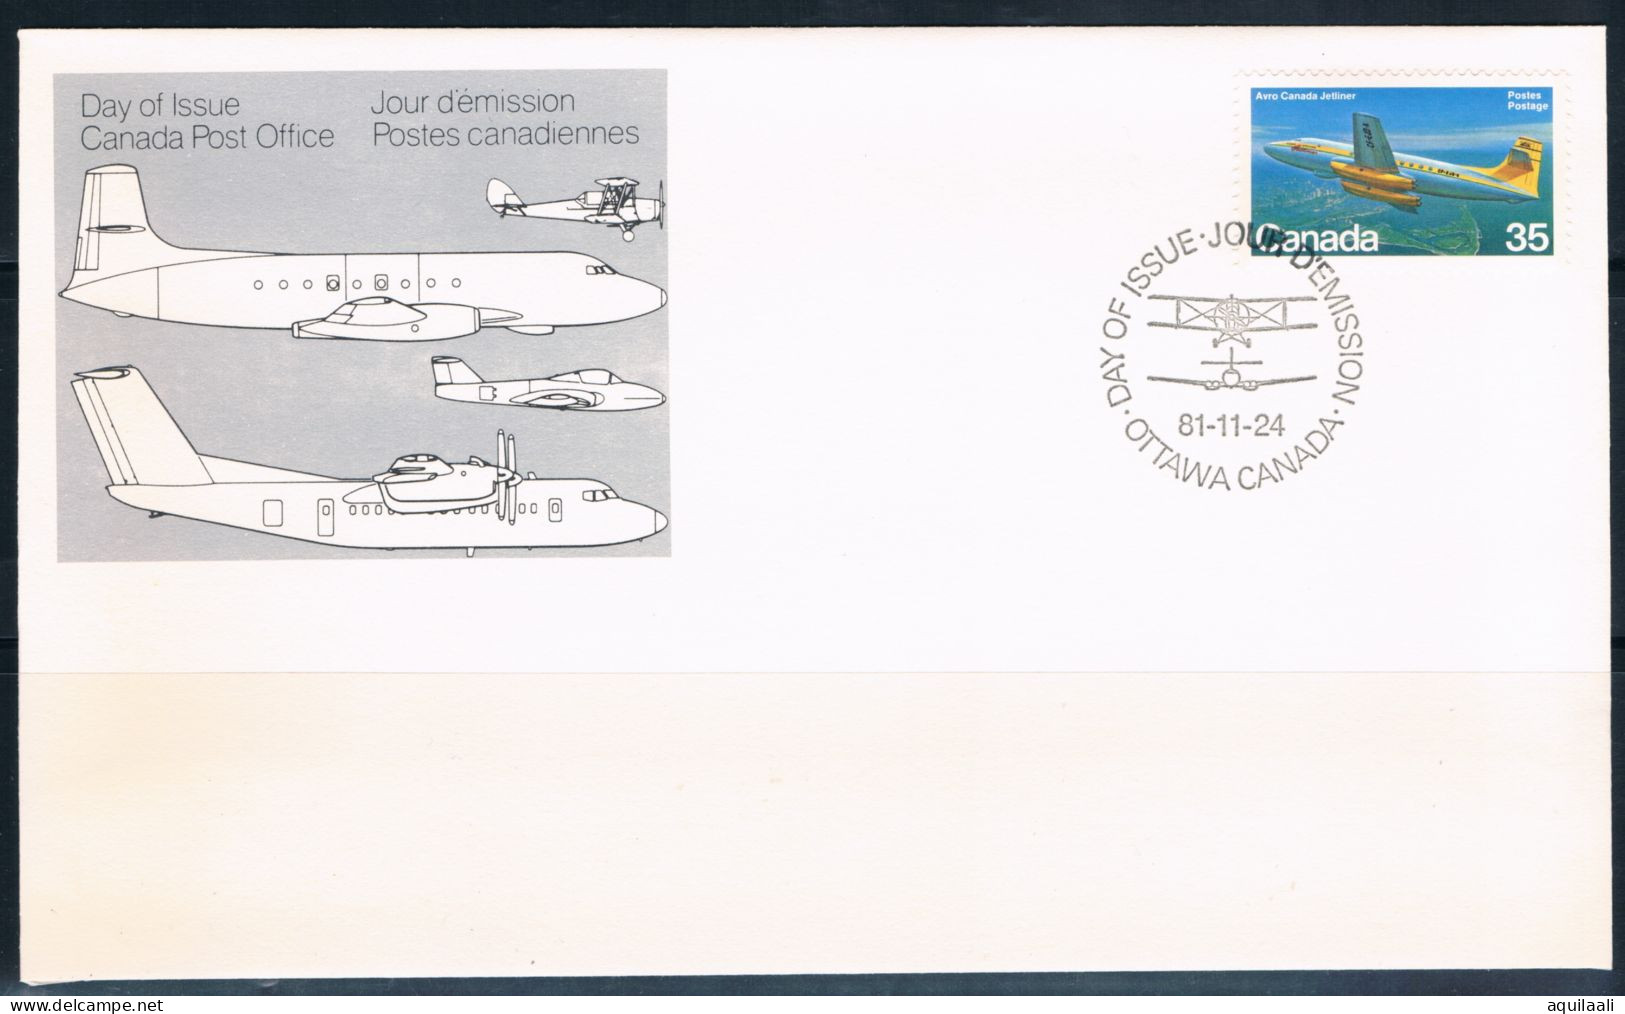 CANADA 1980/1981 -Aircraft, 2 serie su busta con annullo fdc